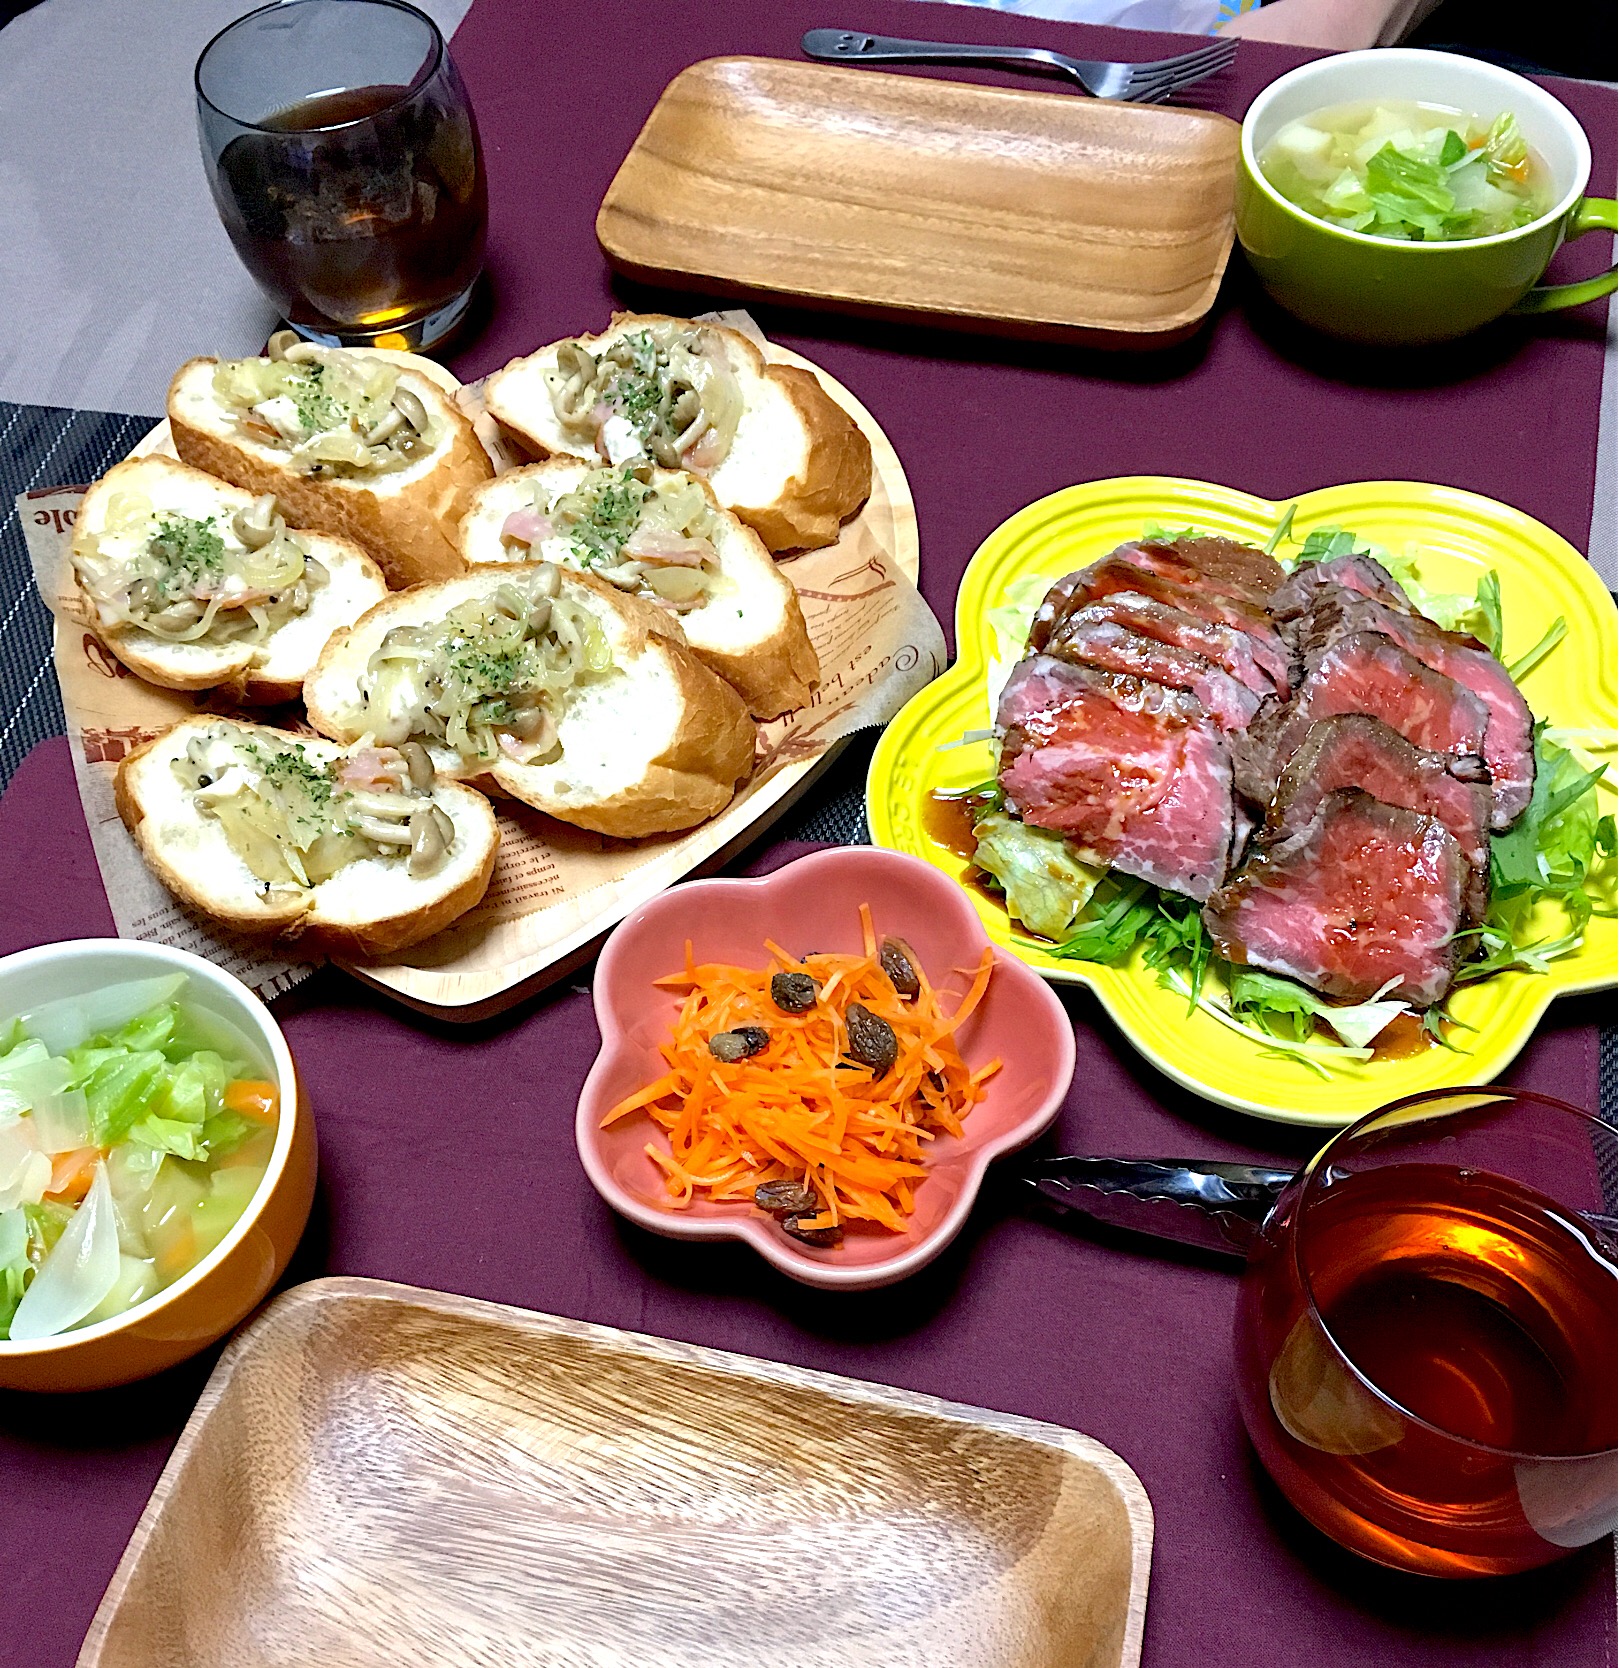 ・牛モモ肉のローストビーフ ・きのことカマンベールのブルスケッタ ・コンソメ野菜スープ ・人参ラペ